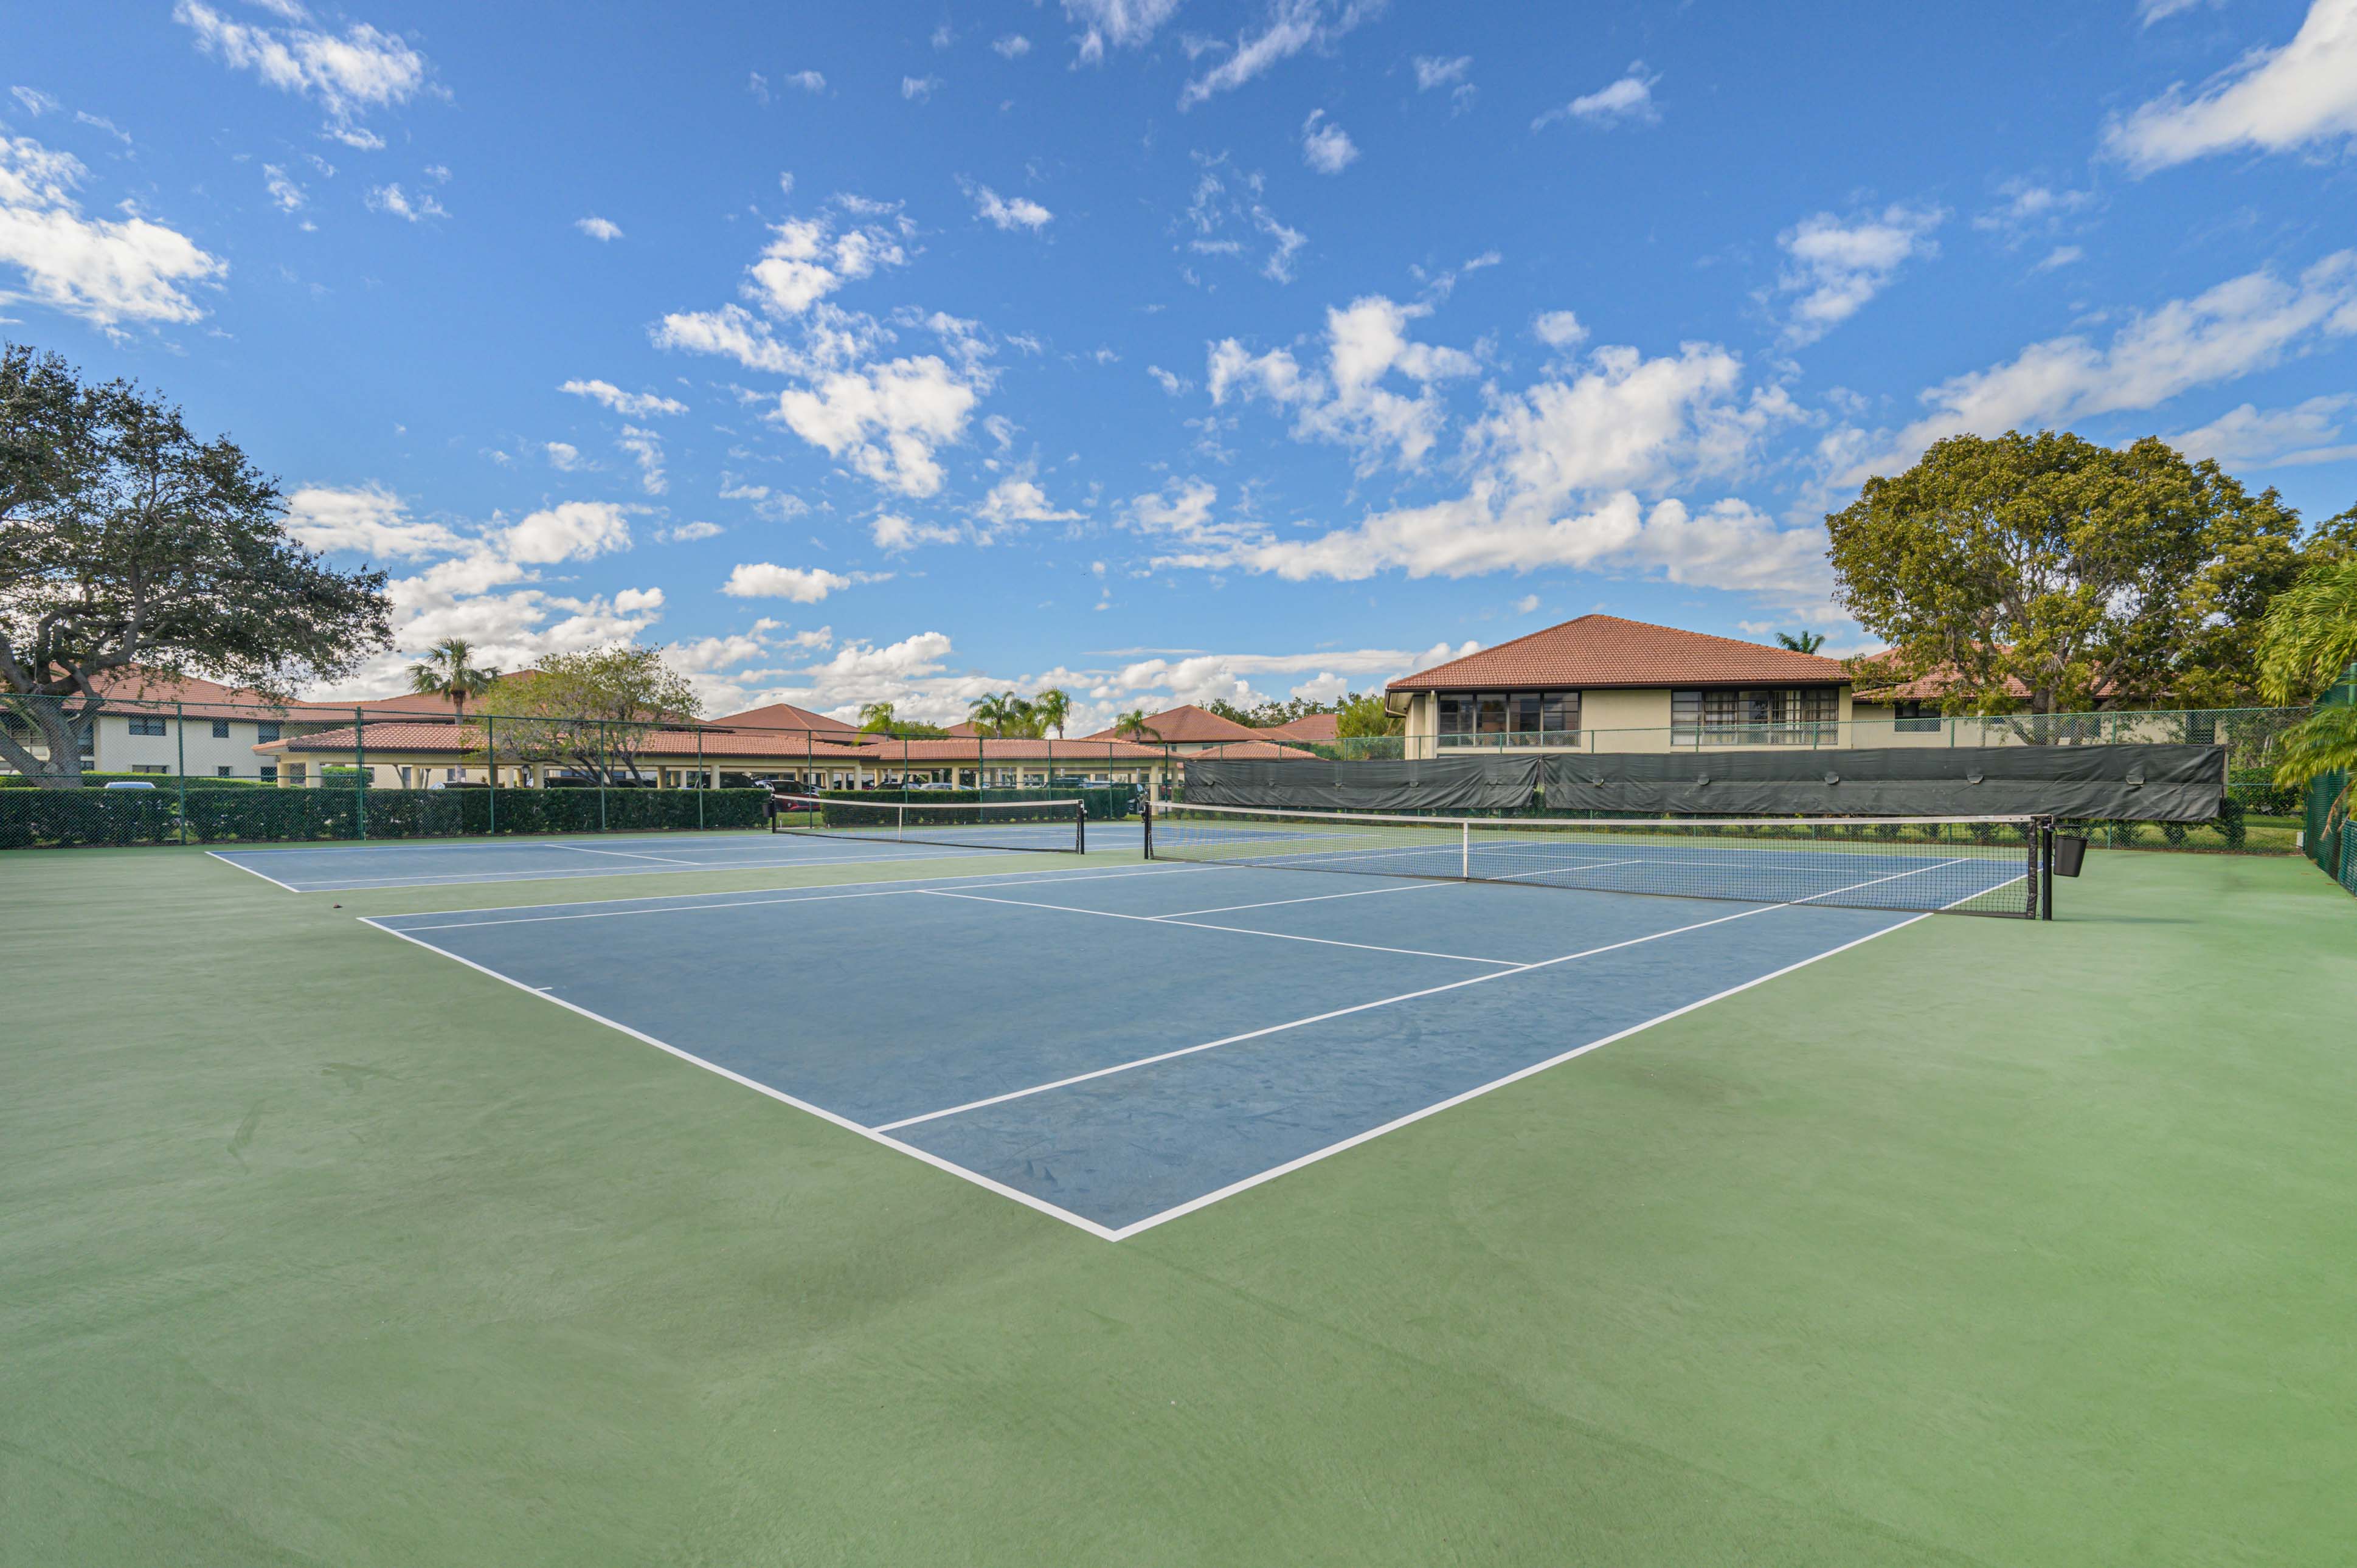 Condominium Tennis Courts&conn=none